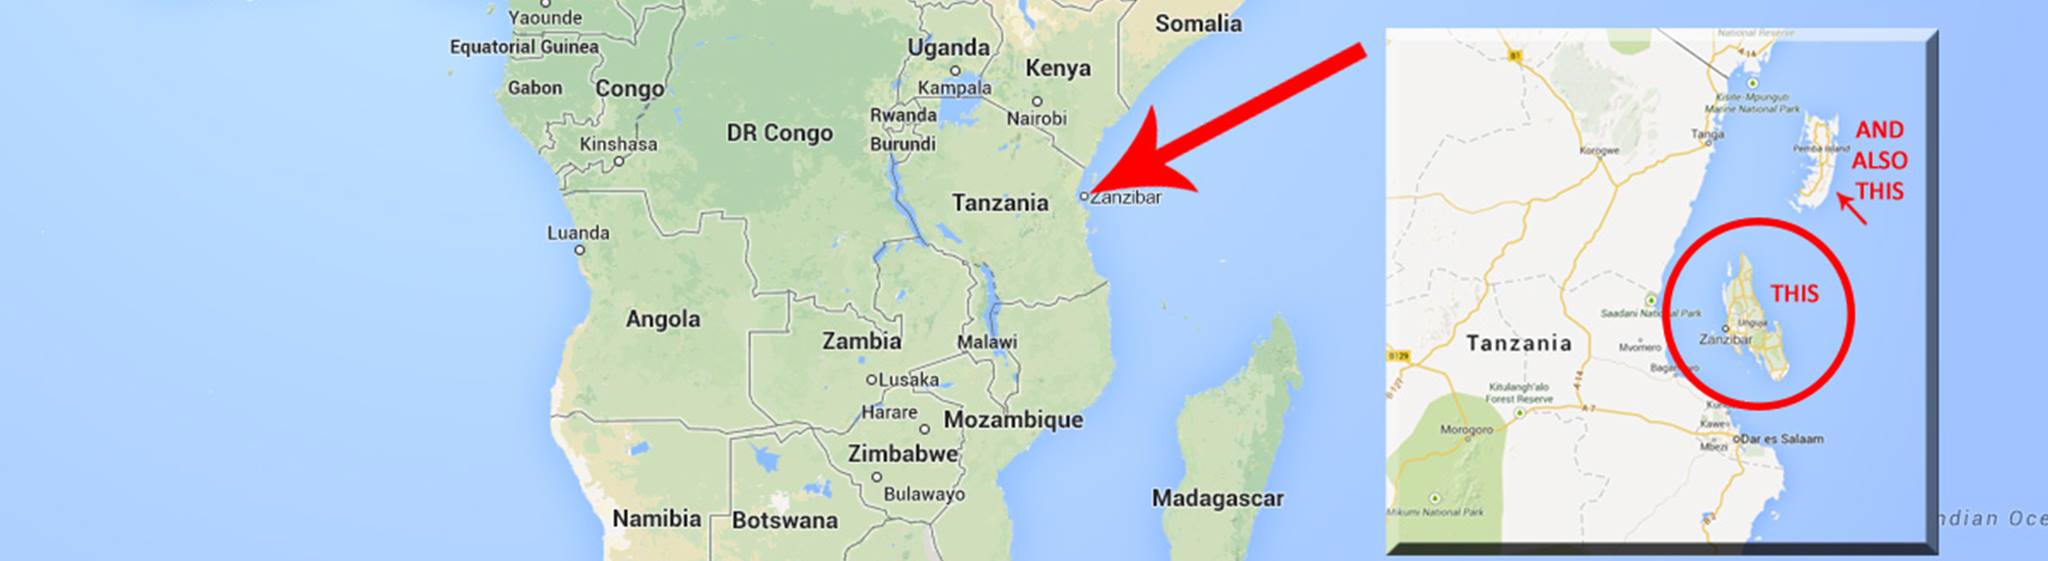 Zanzibar Island Africa Map